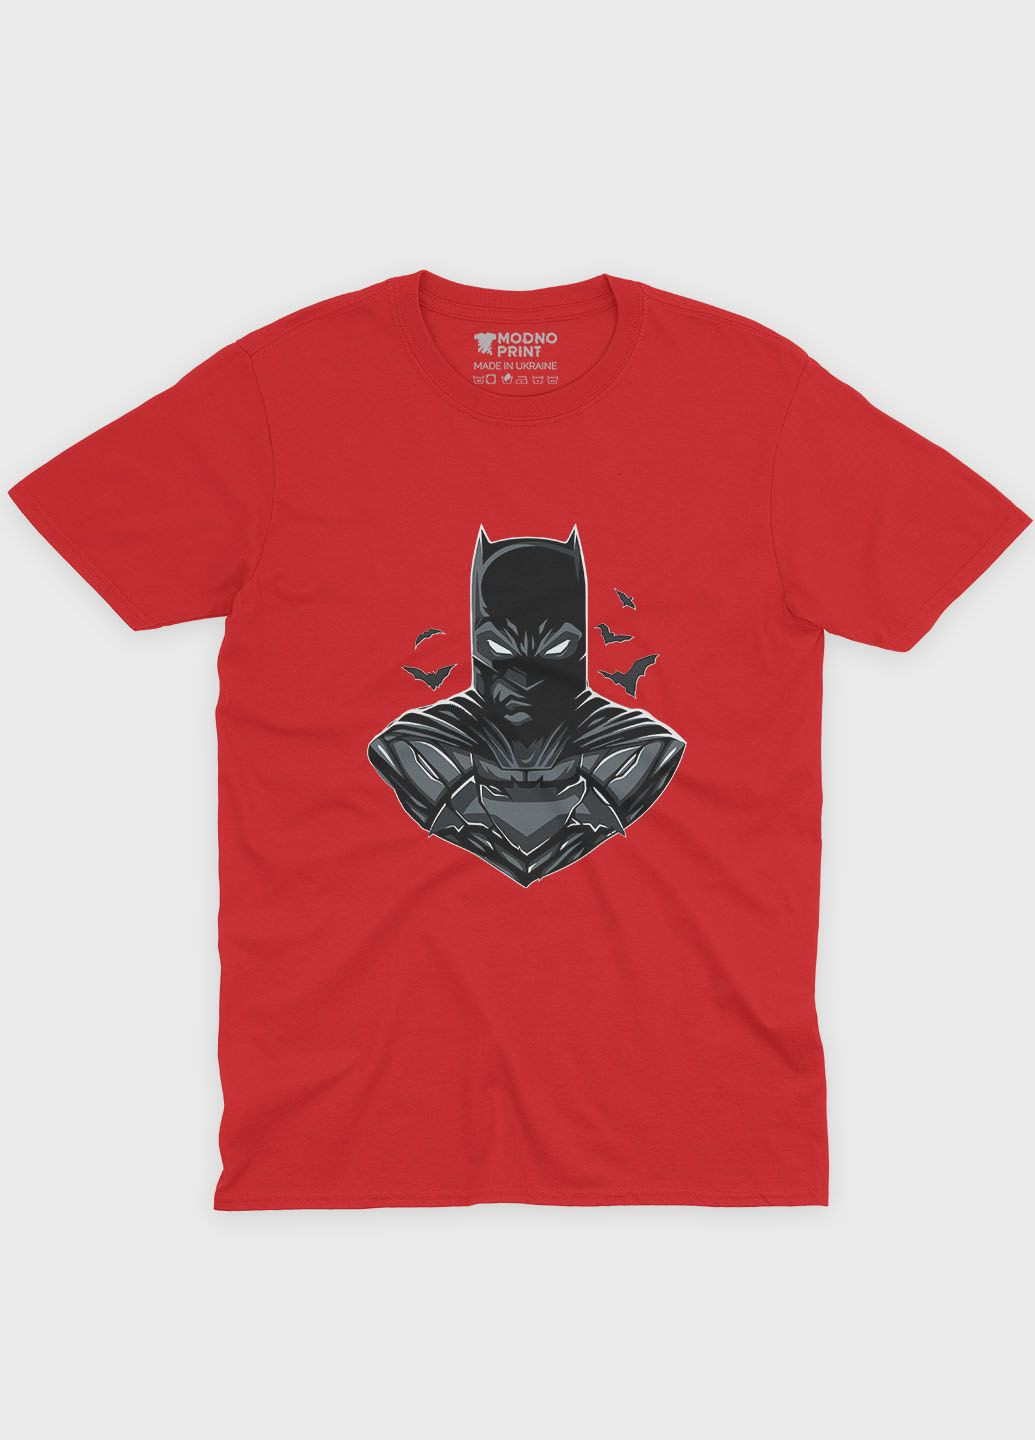 Красная демисезонная футболка для девочки с принтом супергероя - бэтмен (ts001-1-sre-006-003-026-g) Modno